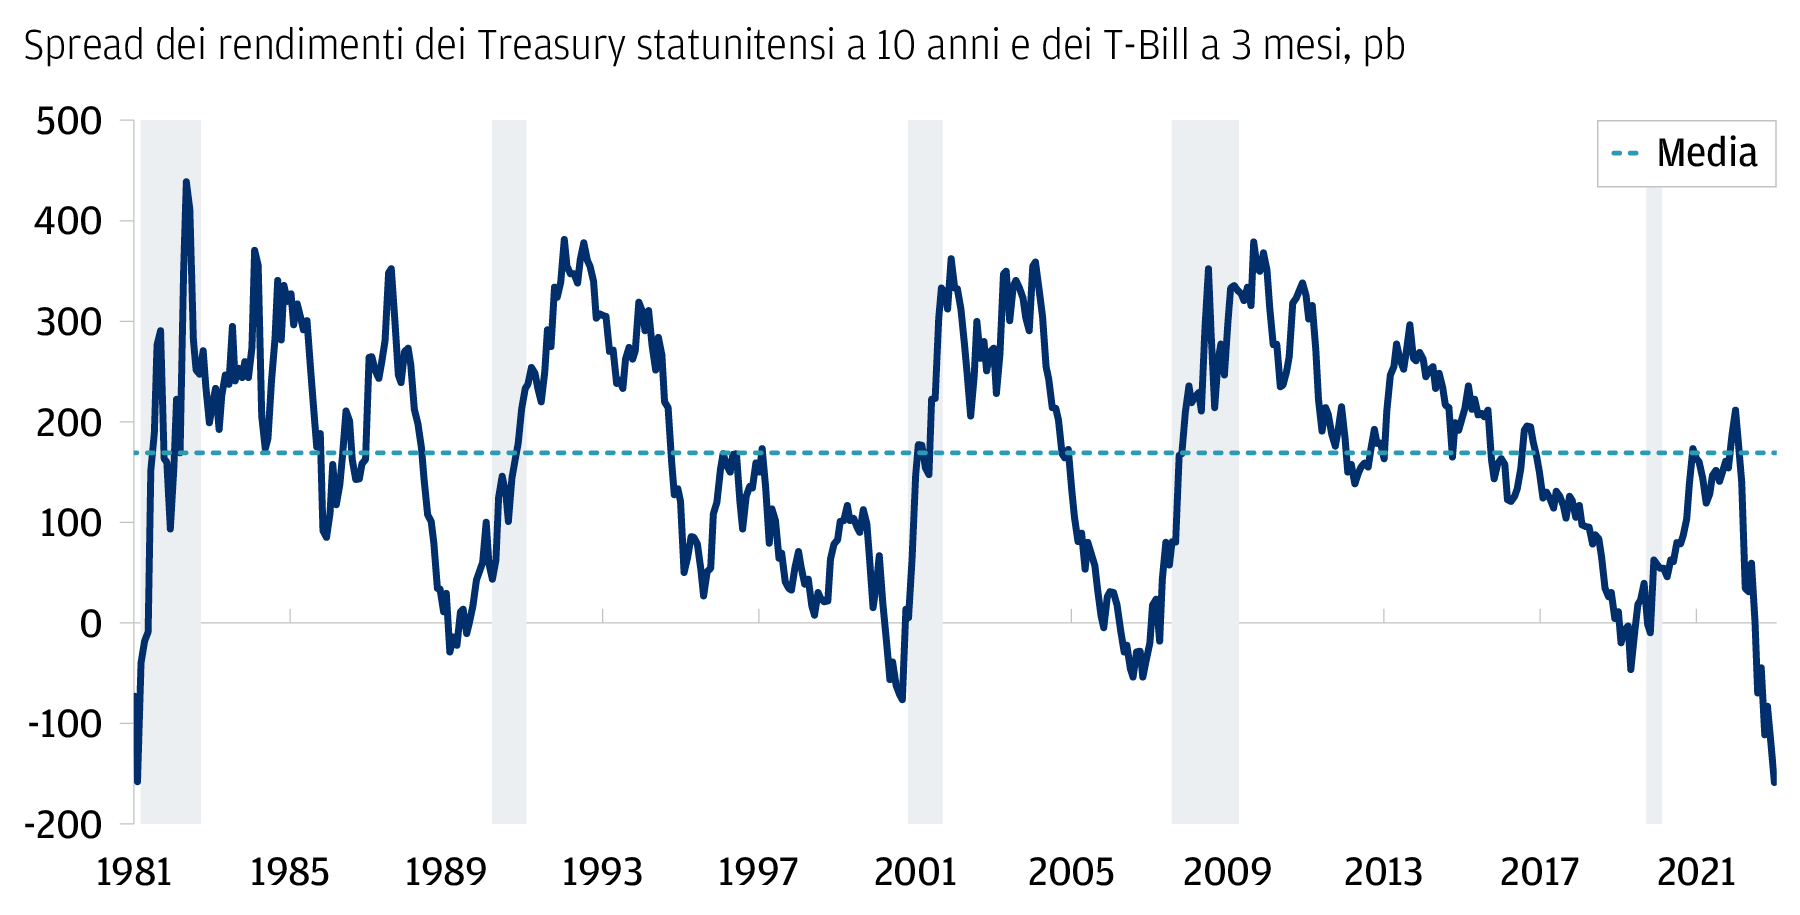 Grafico lineare della curva dei rendimenti dei titoli di Stato statunitensi (definita come differenziale di rendimento tra i Treasury a 10 anni e T Bill a 3 mesi), espressa in punti base sull’asse y e visualizzata con valori mensili dal 1981 all’aprile 2023 sull’asse x. Ad aprile 2023, la curva dei rendimenti evidenzia una profonda inversione di -160 pb, un livello che non si vedeva dal 1981. La linea tratteggiata indica un valore medio di 168 pb nel periodo di tempo mostrato. Le inversioni sono state osservate anche nel 1981 (inversione di -160 pb), 1989 (-30 pb), 2000 (-78 pb), 2007 (-56 pb) e 2019 (-48 pb). Queste precedenti inversioni sono state seguite da fasi di recessione economica secondo la definizione del NBER, indicate dall’area ombreggiata.